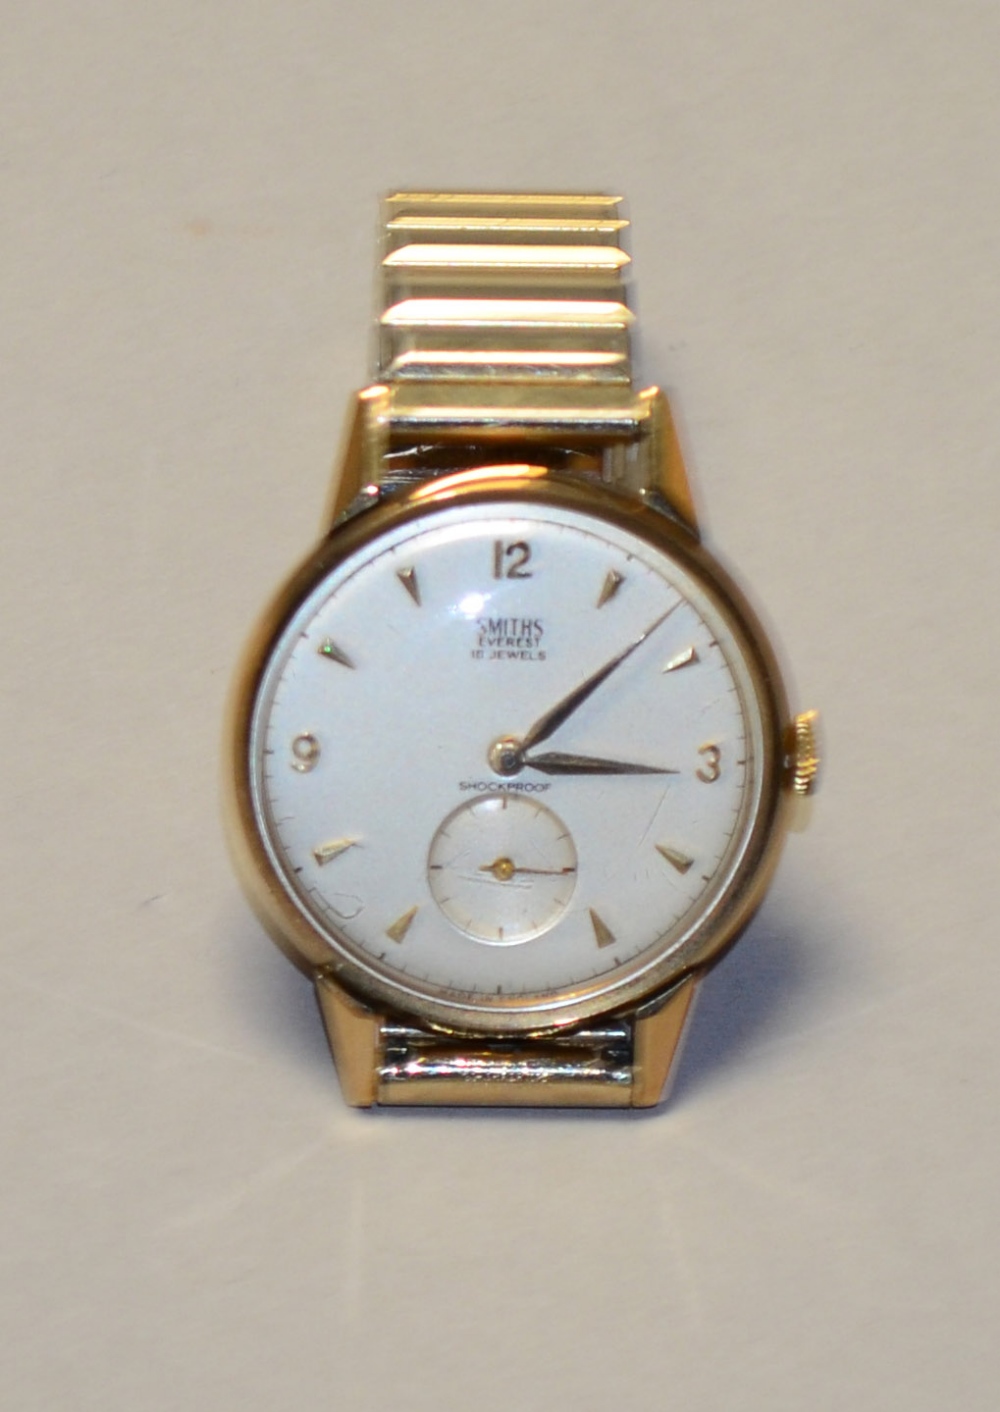 Hallmarked 9 carat gold Smith Everest 18 Jewels Wristwatch.